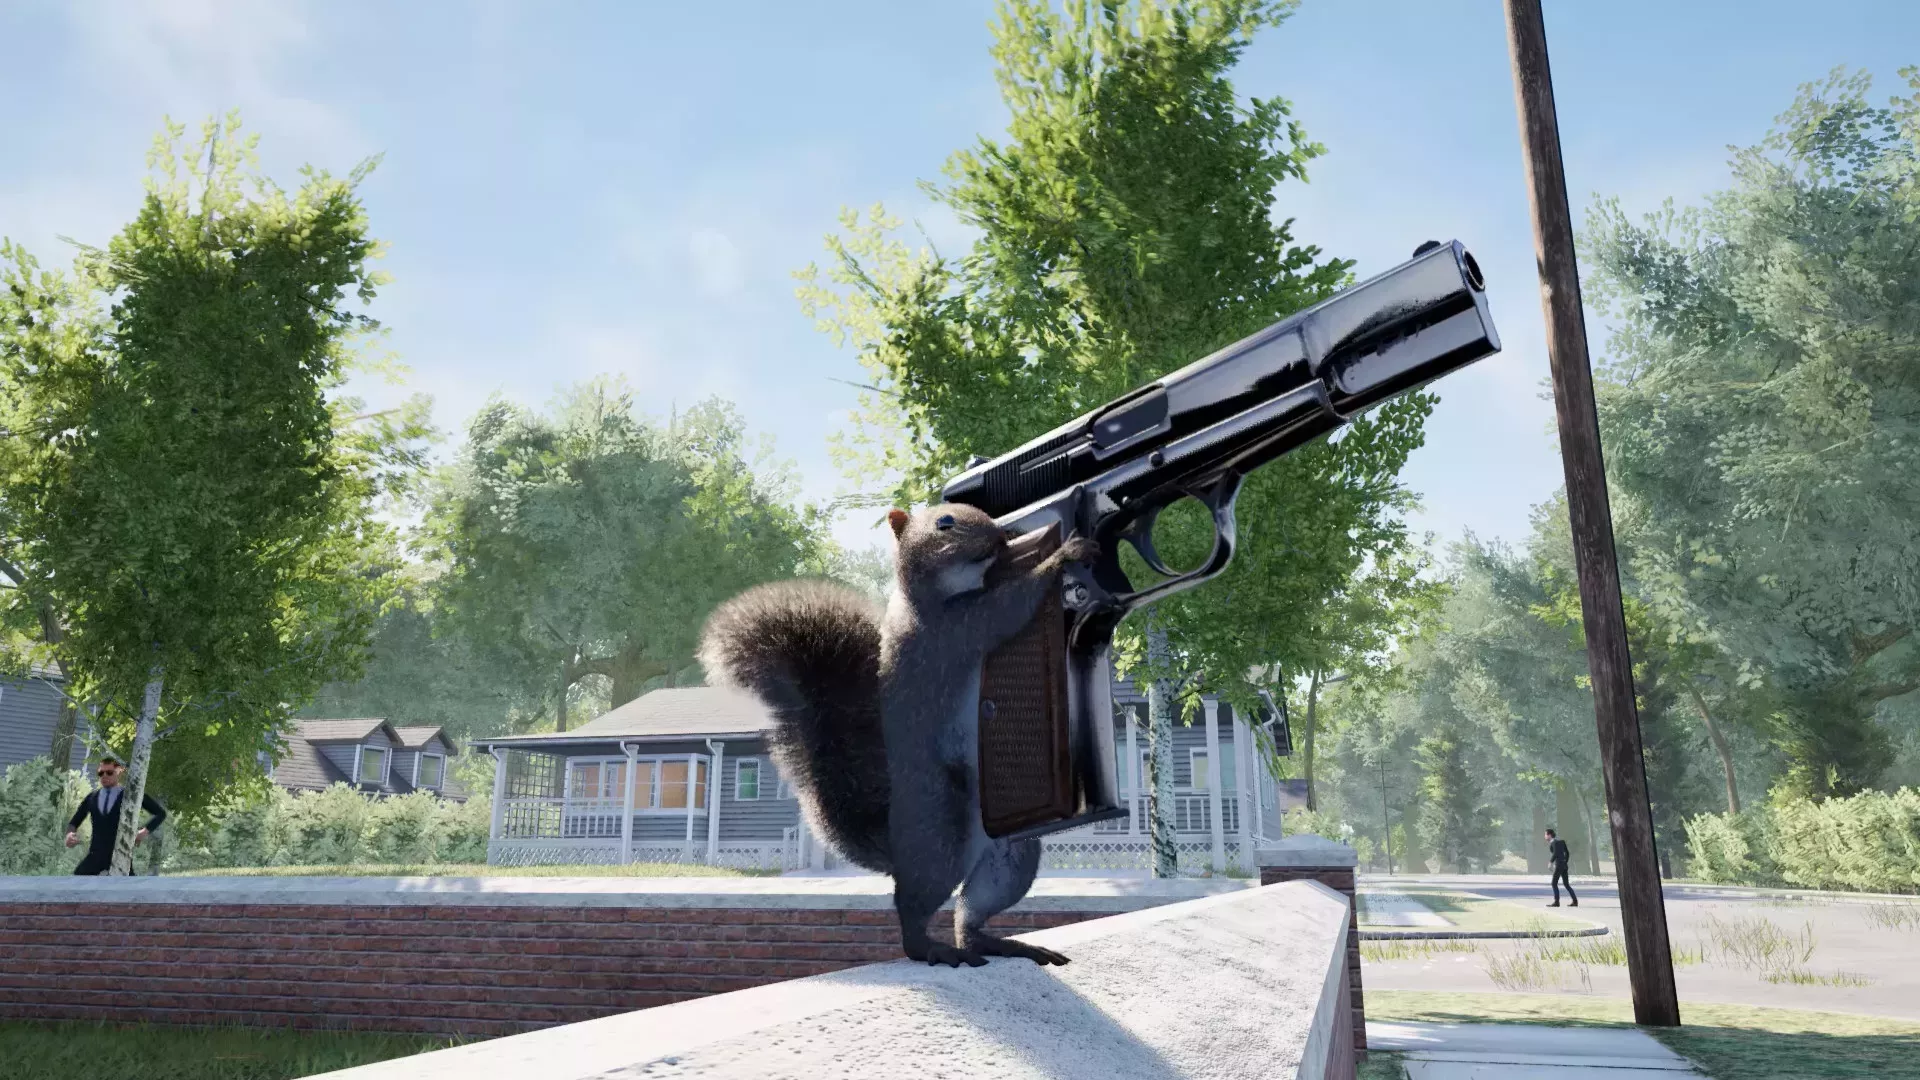 Squirrel With A Gun' te permite cometer crímenes contra la humanidad